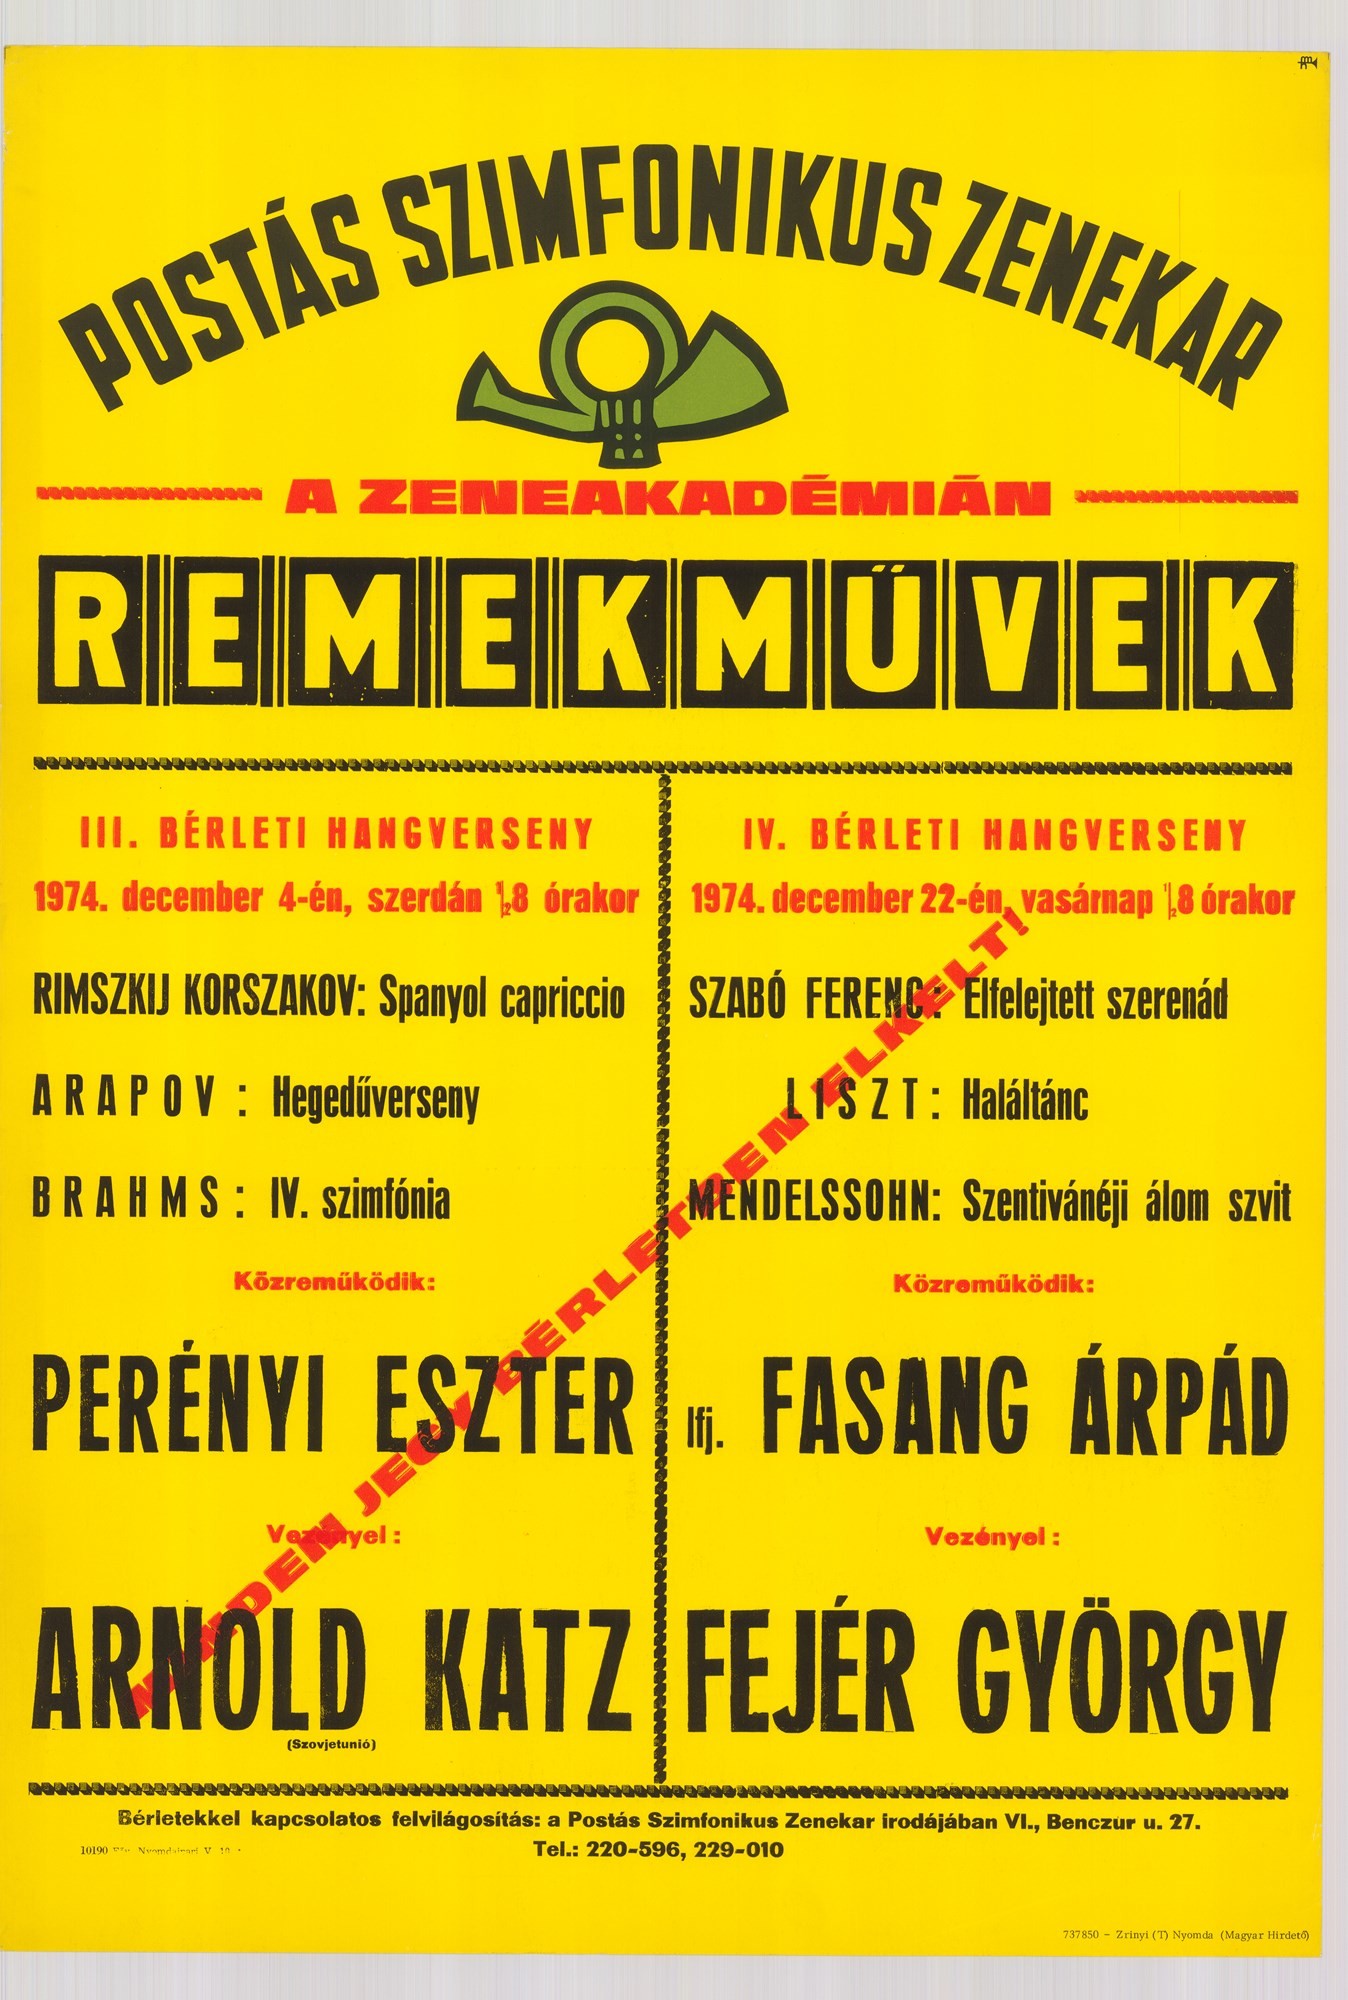 Plakát - Postás Szimfonikus Zenekar a Zeneakadémián, Remekművek, 1974 (Postamúzeum CC BY-NC-SA)